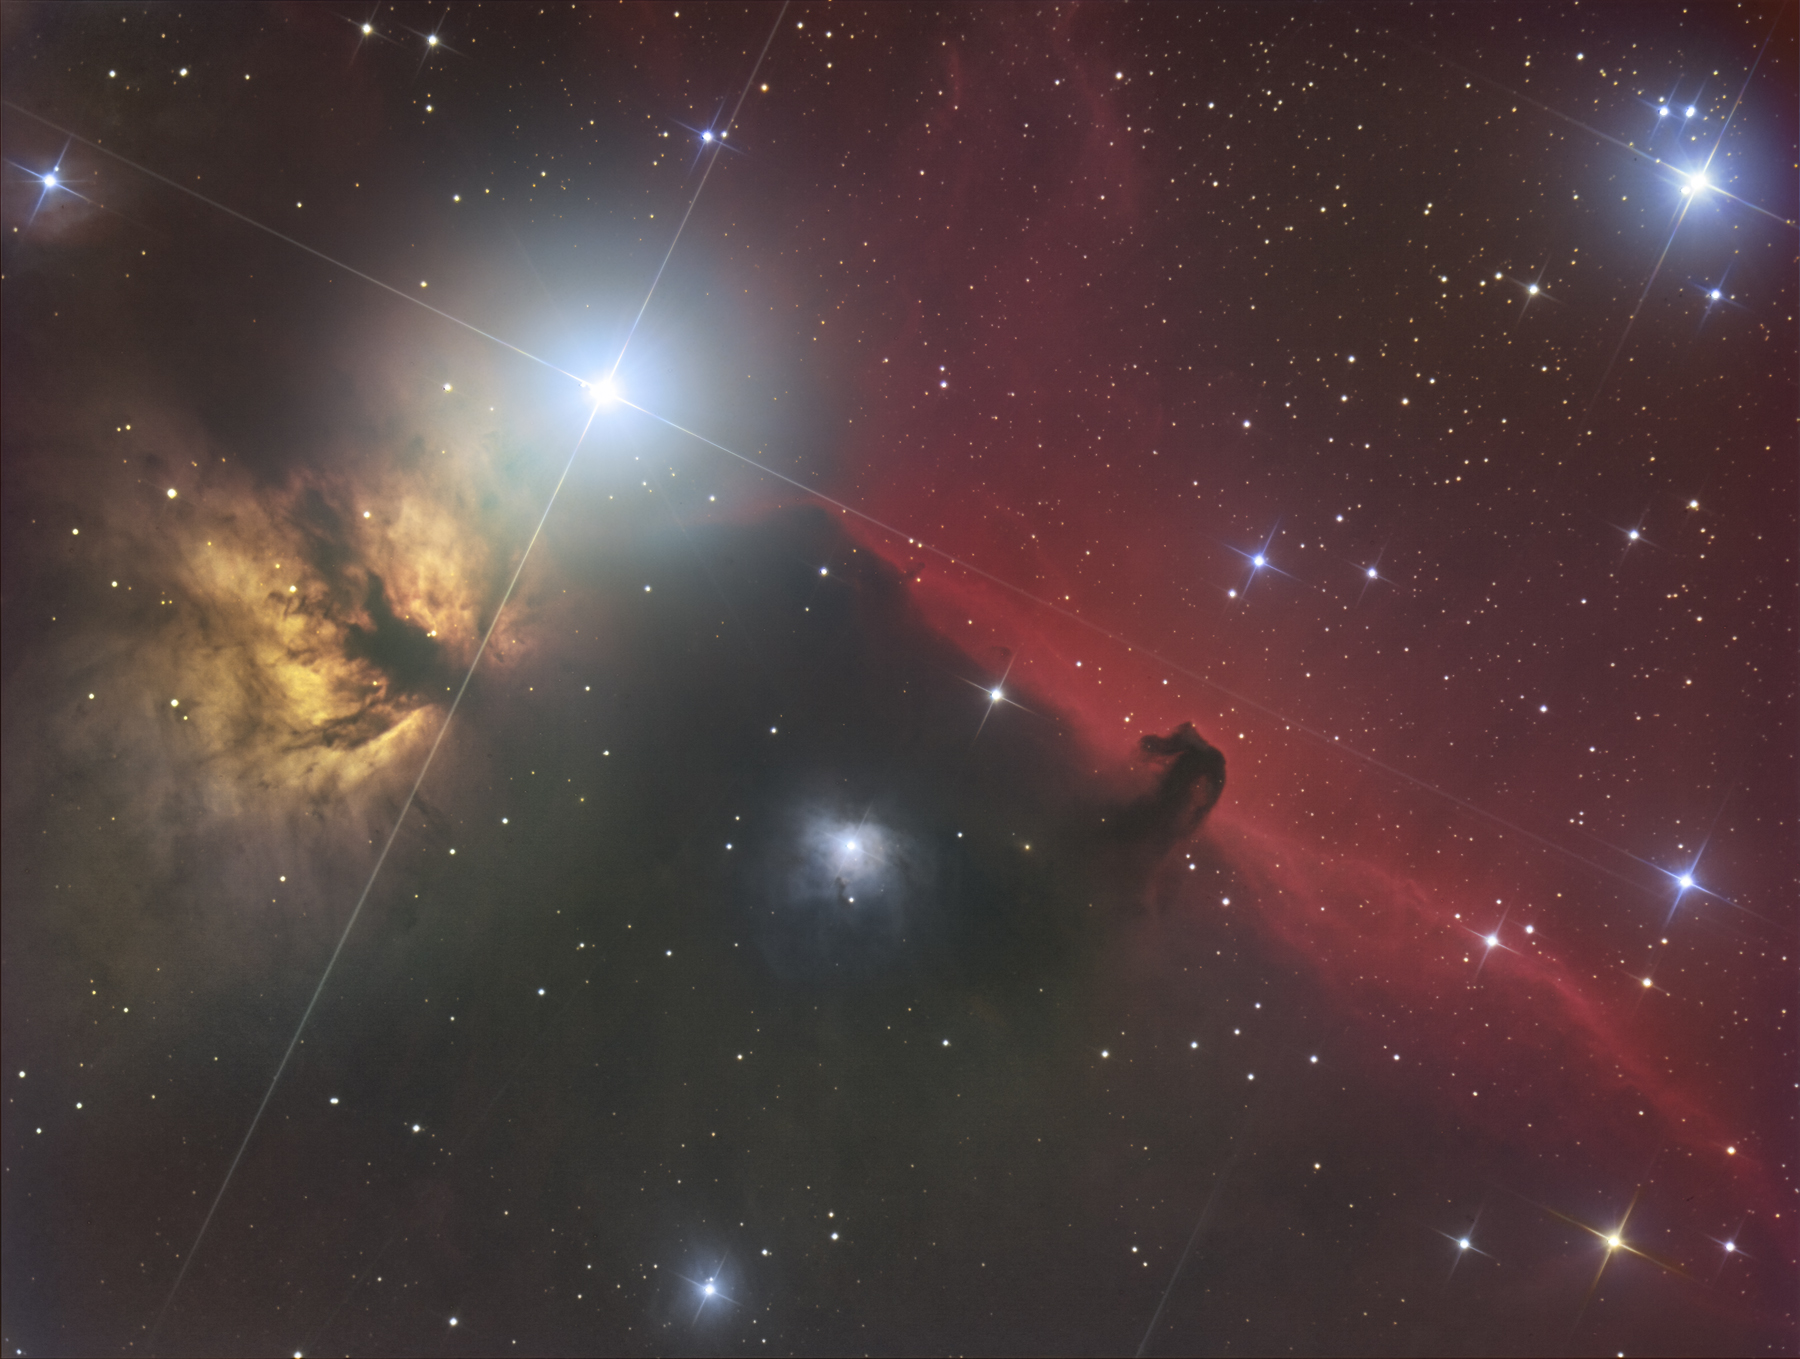 Horsehead-Nebula IC434